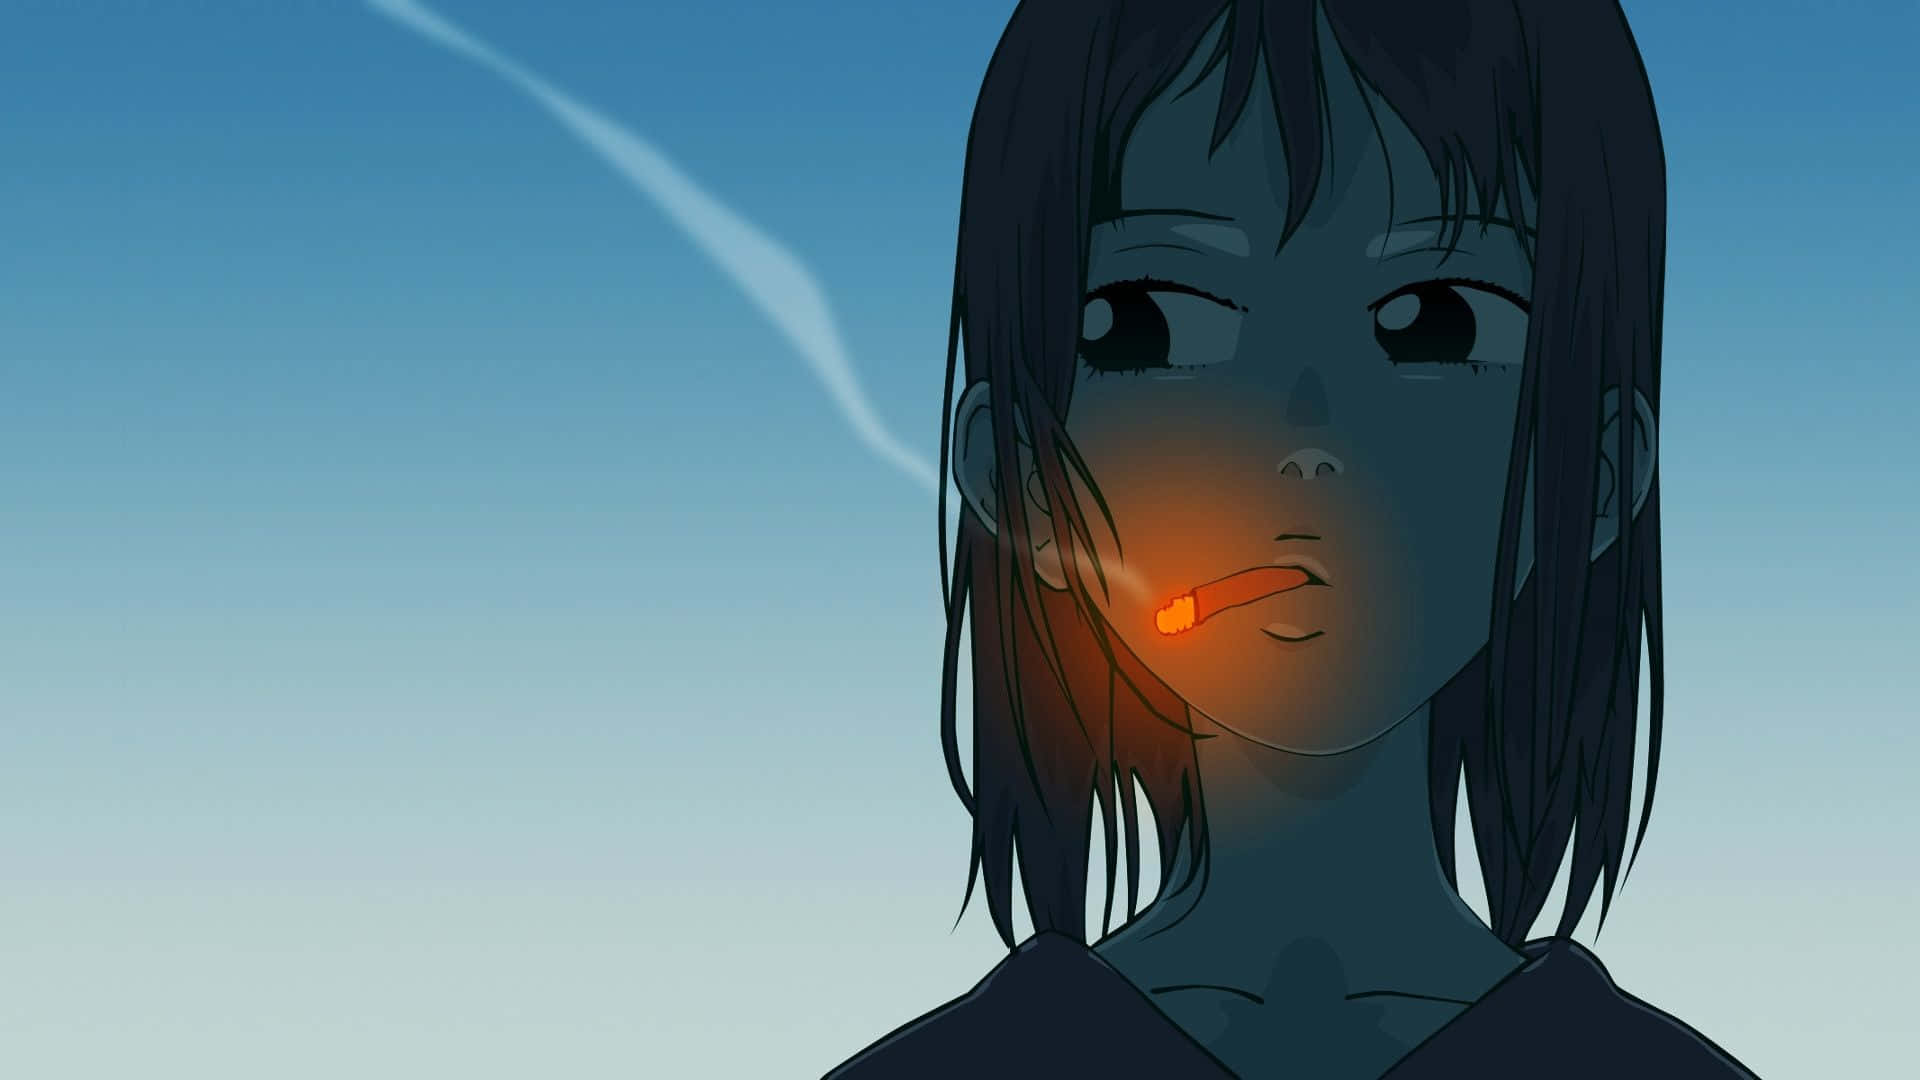 1.  "Cool Sad Anime" Wallpaper